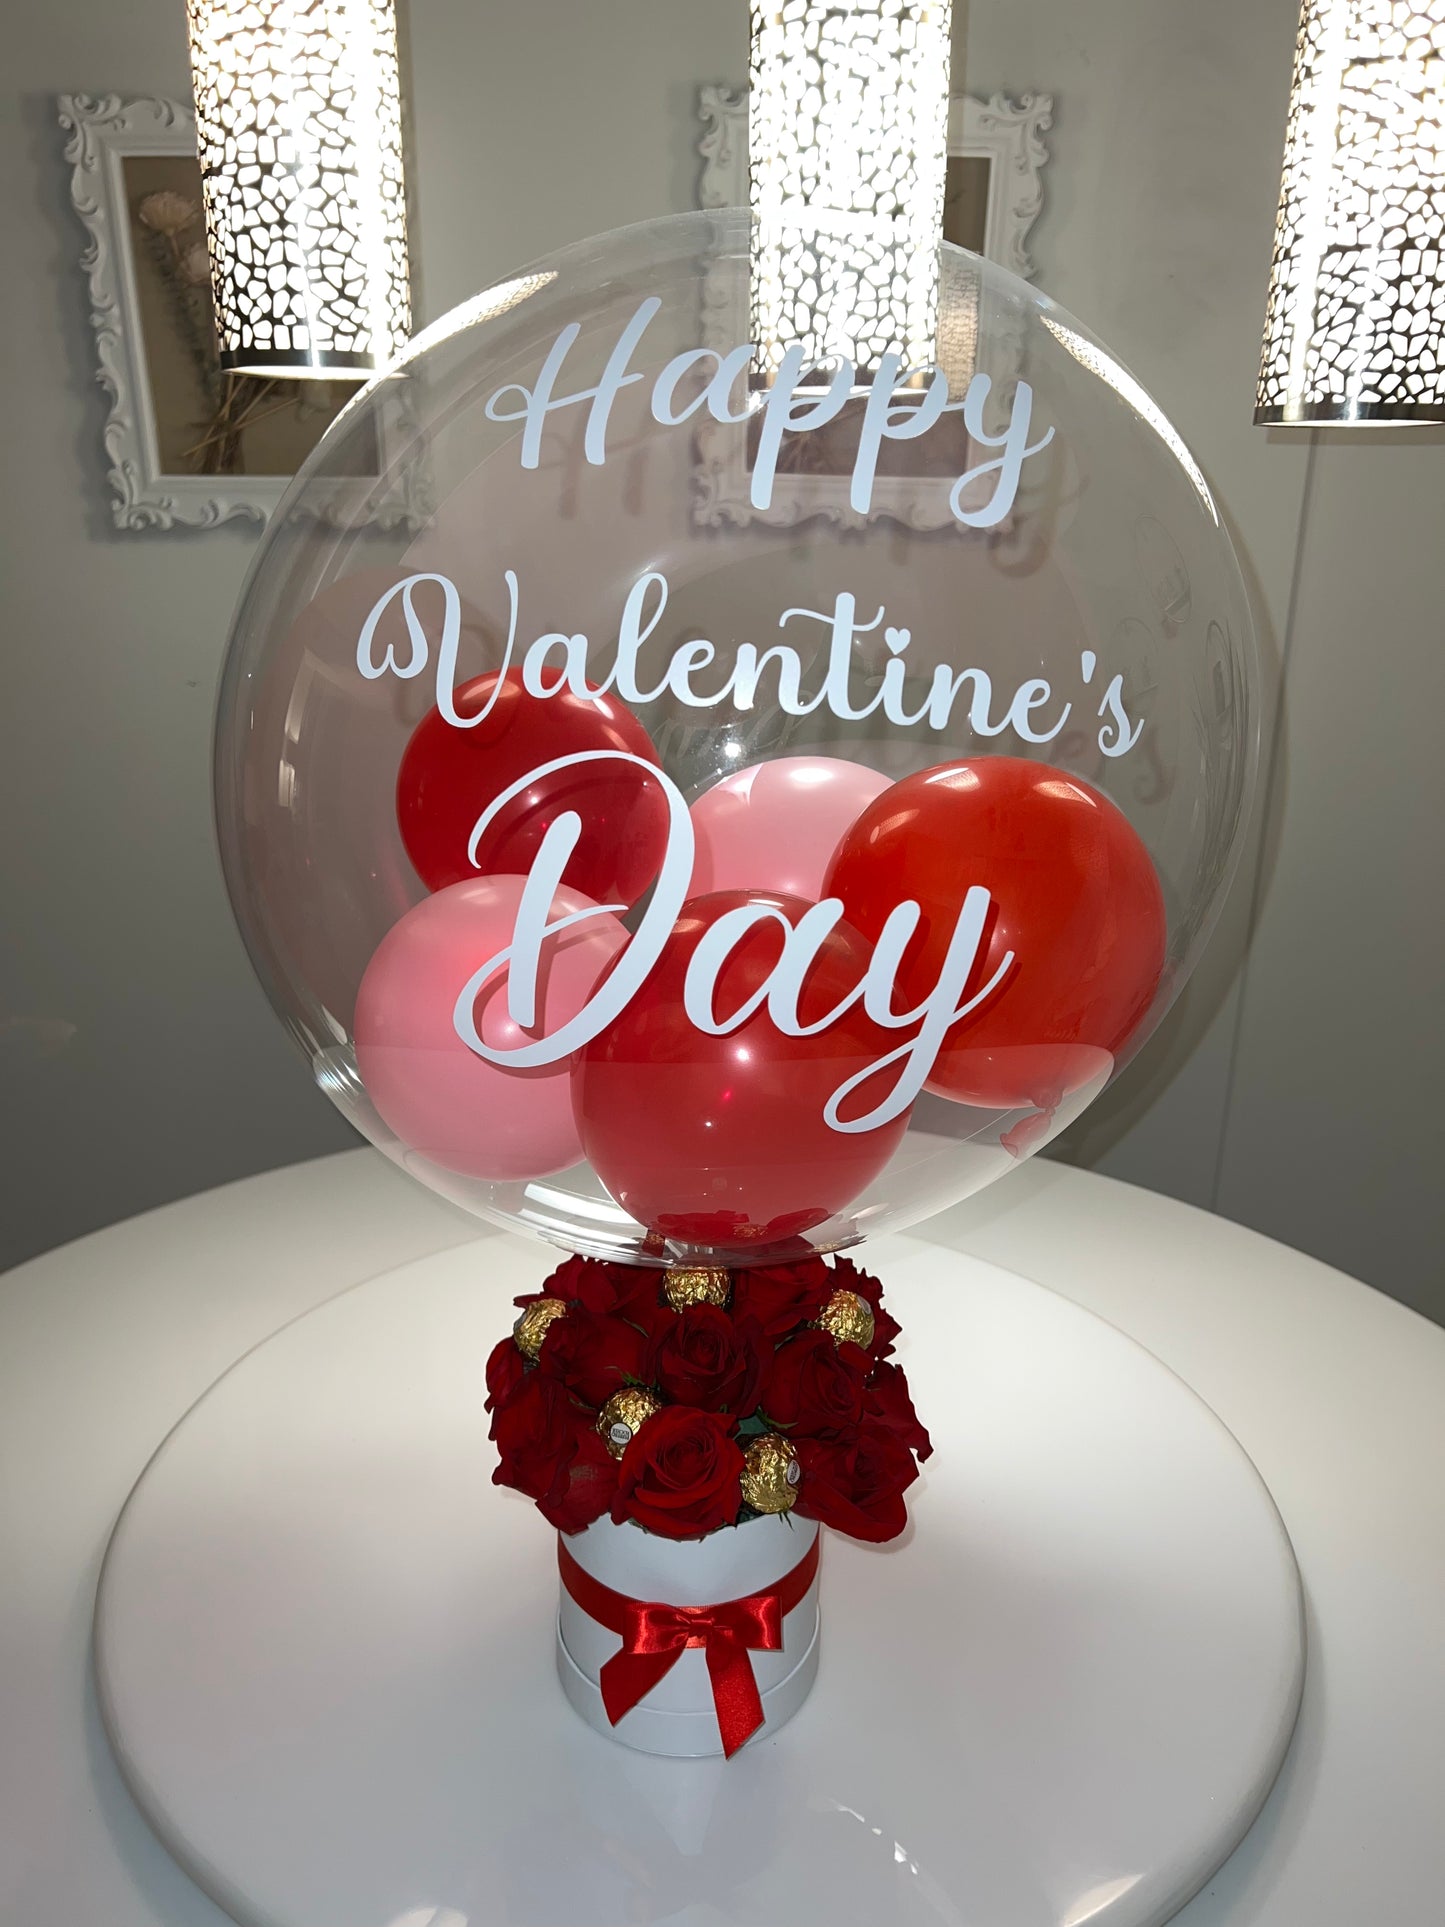 DIY Hot Air Balloon with Chocolate Bouquet / Bobo Balloon Bouquet